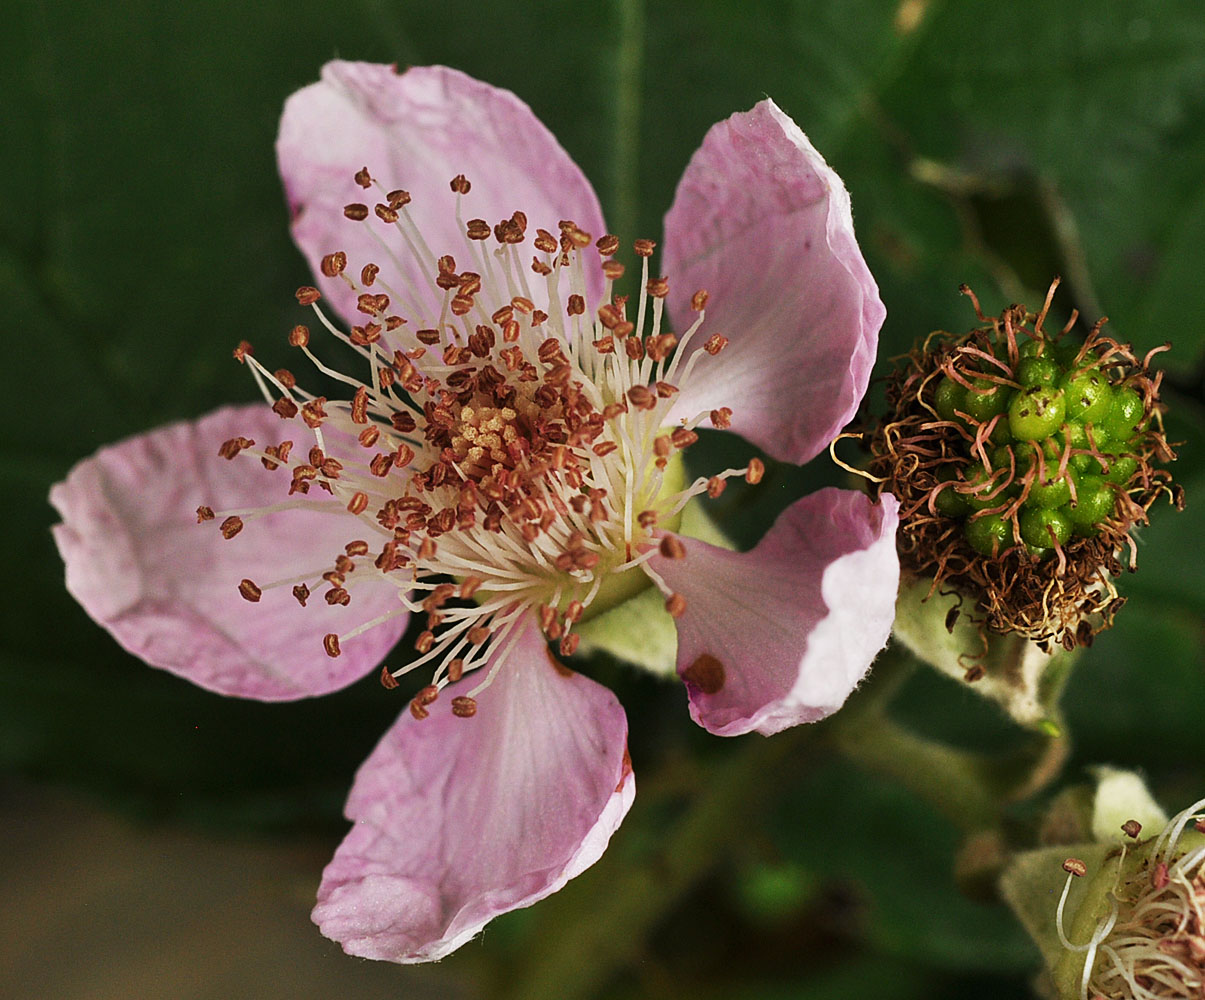 Flora of Eastern Washington Image: Rubus bifrons